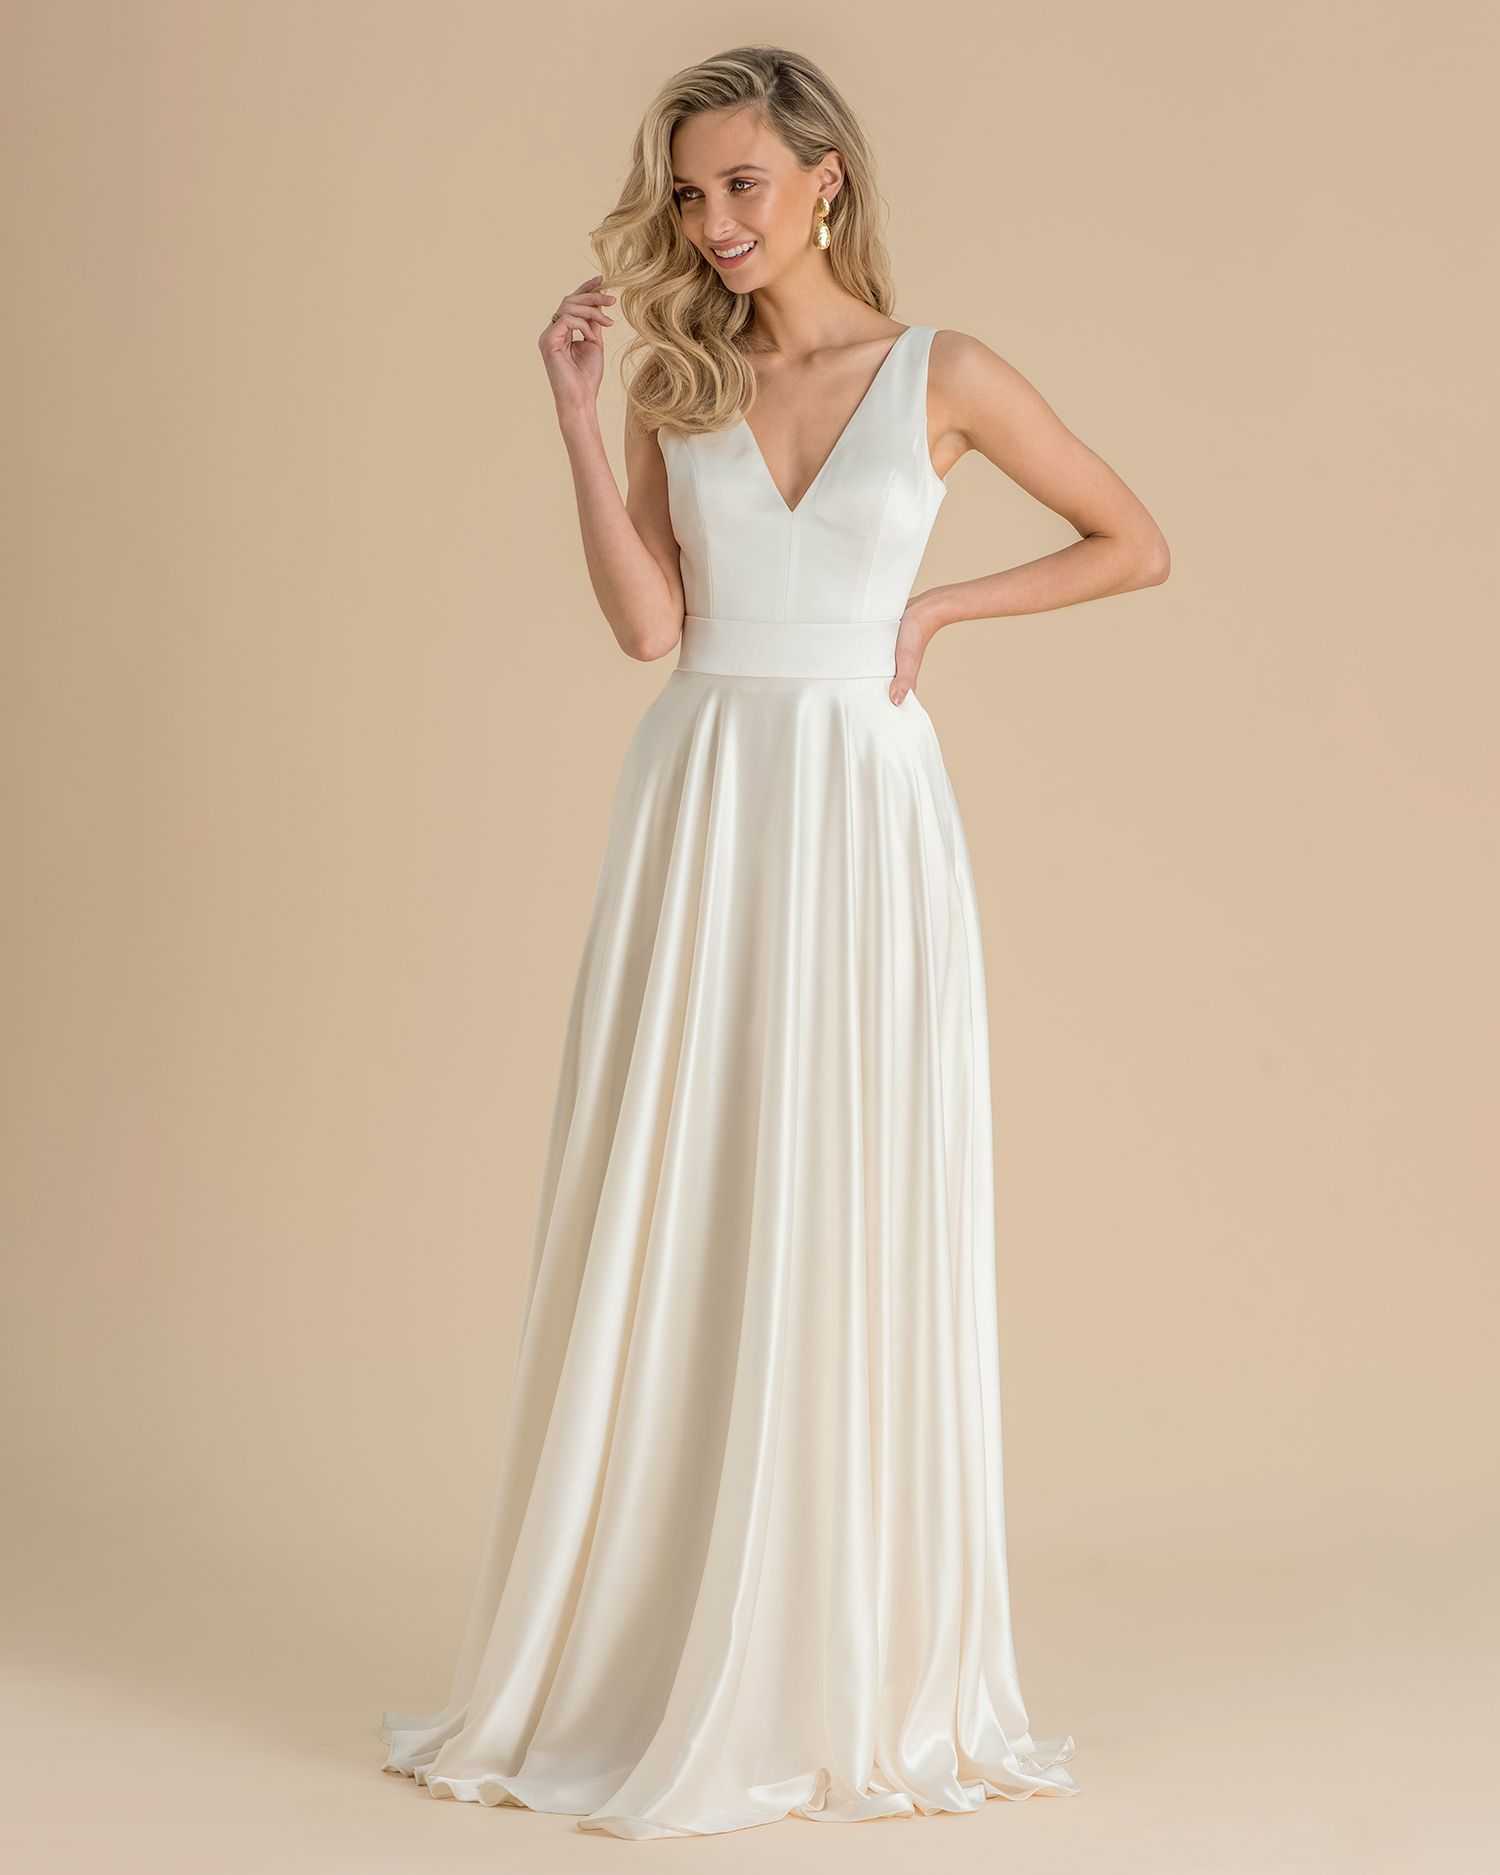 Catherine Deane Spring 2019 Wedding Dress Collection | Martha Stewart